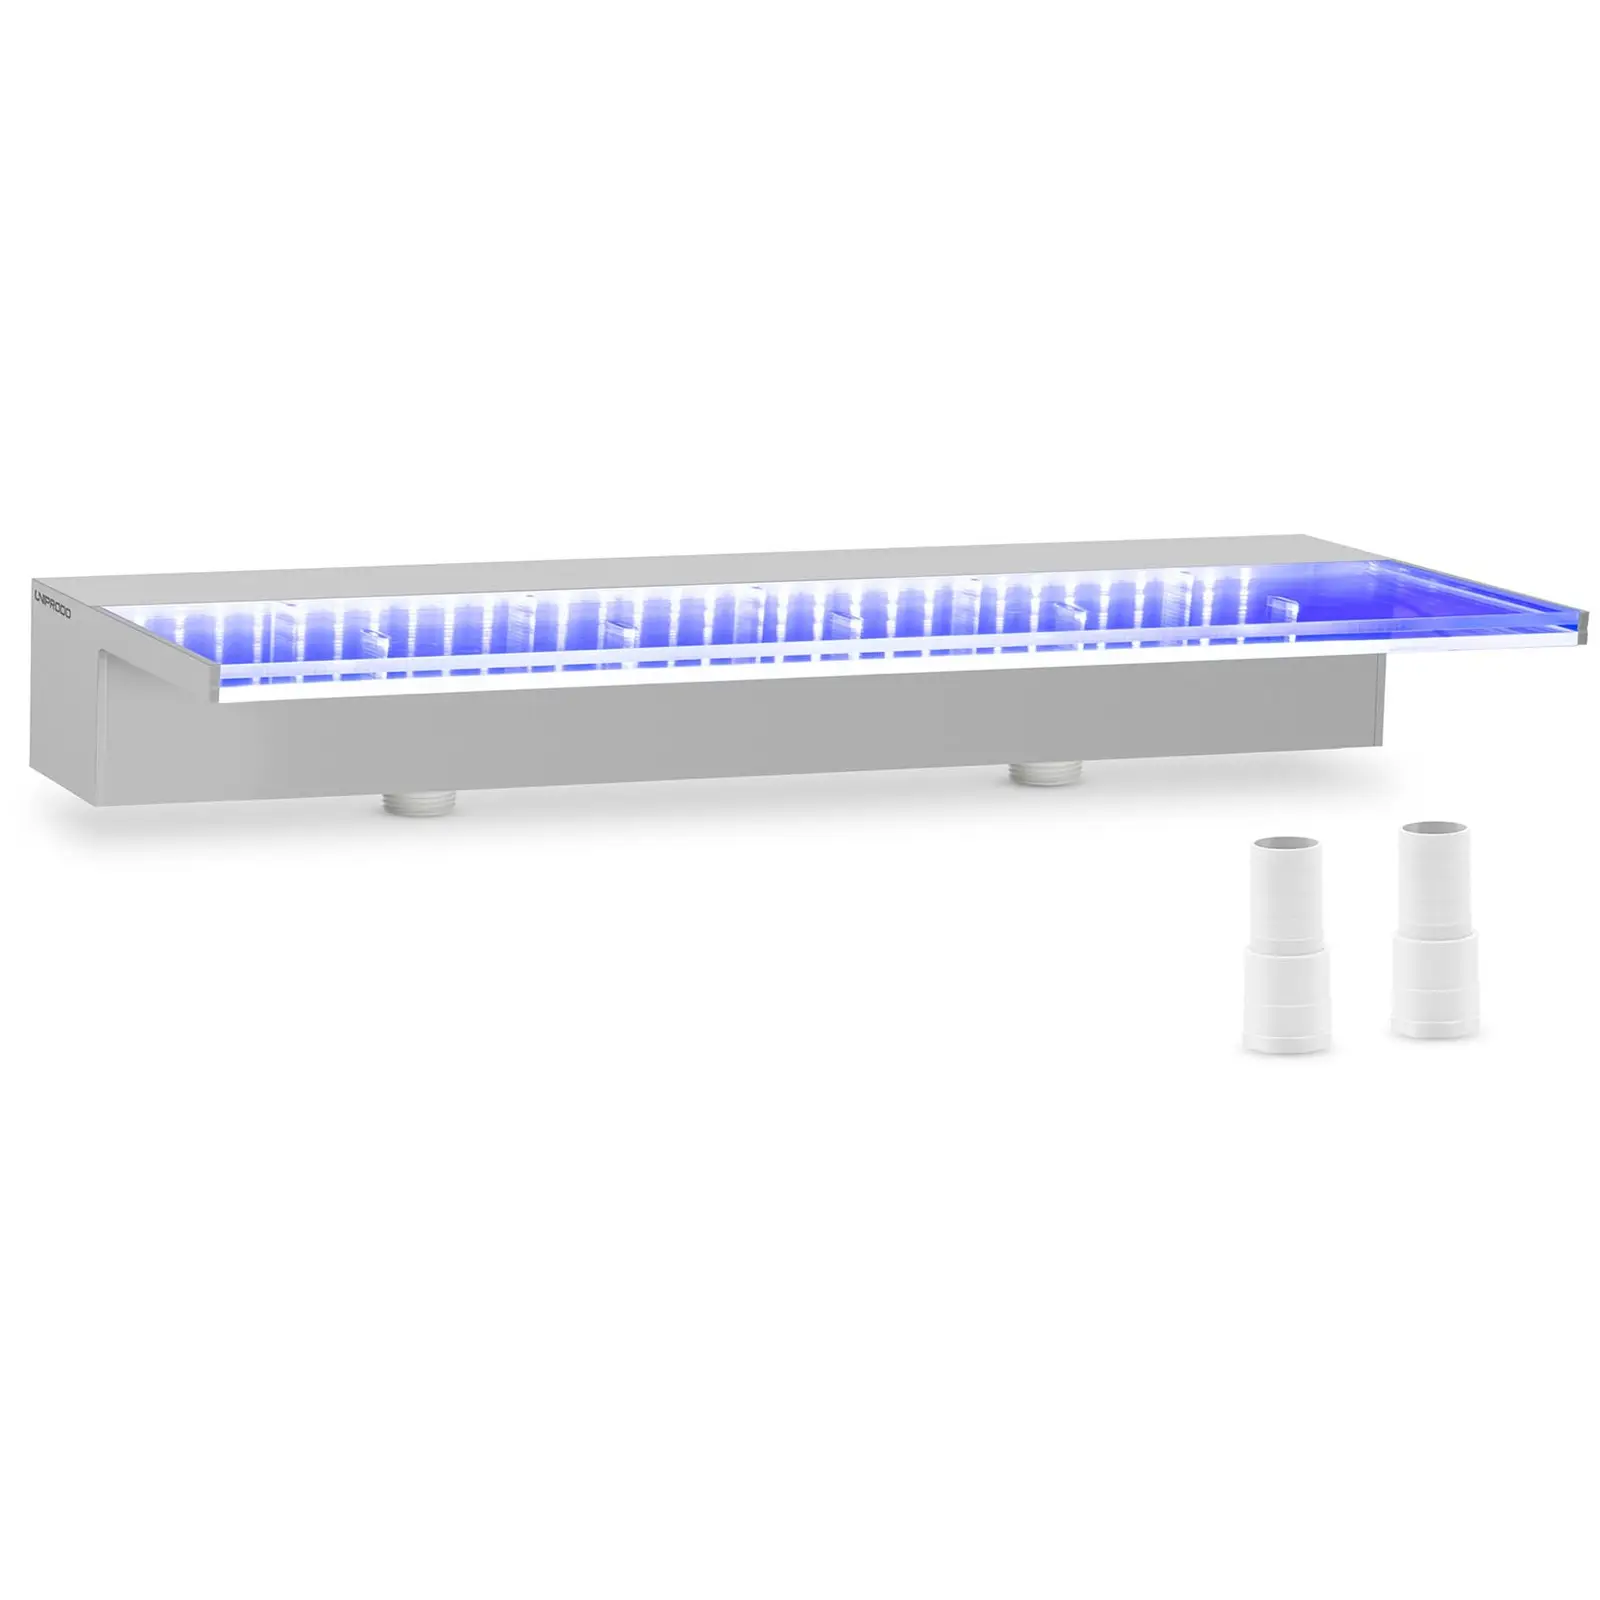 Medence szökőkút - 60 cm - LED világítás - kék / fehér - mély vízkifolyó